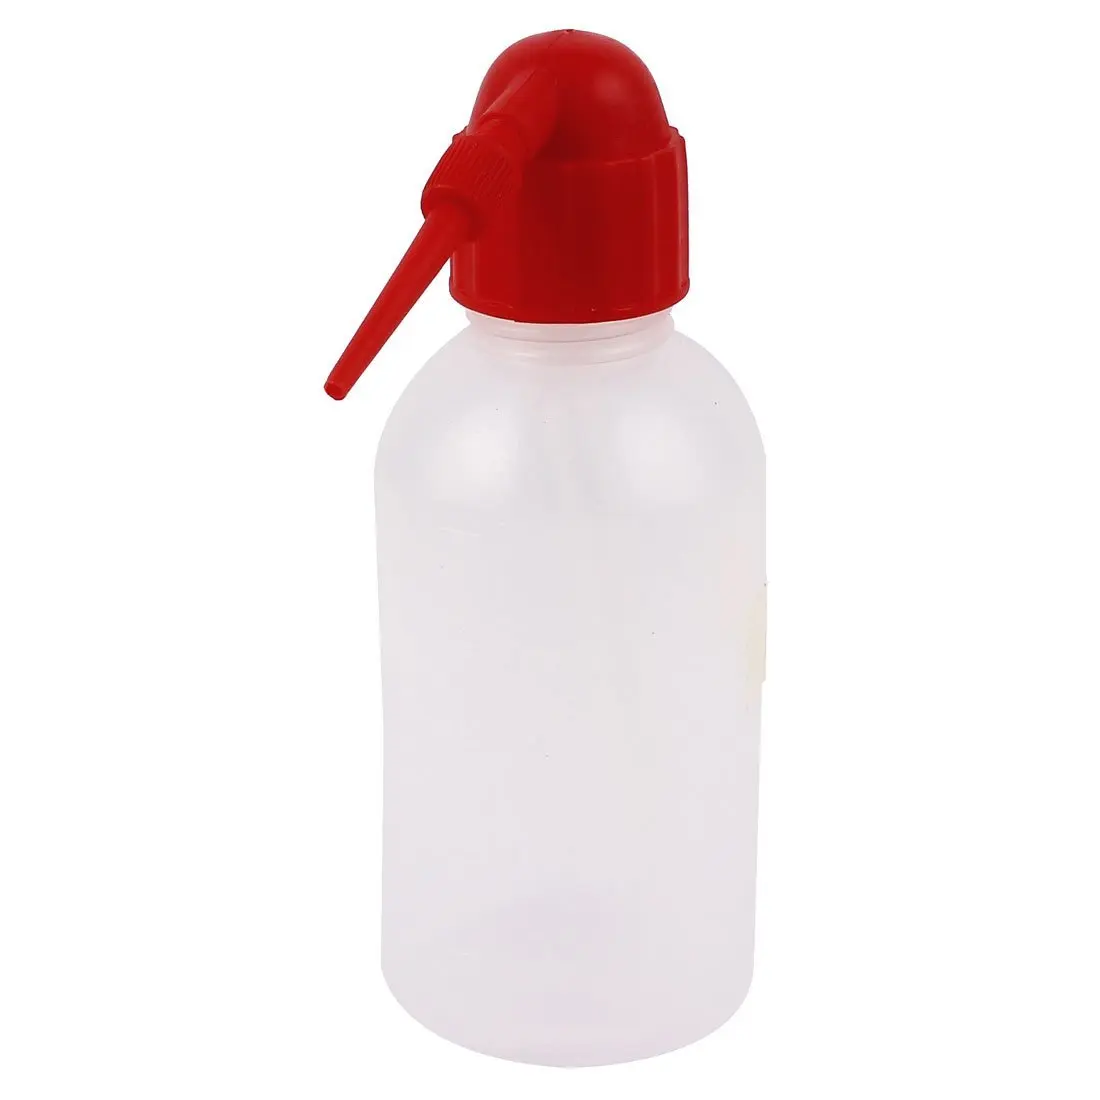 Пластиковый распылитель для промывки тату, бутылка для выдавливания клея, Диспенсер 250 мл